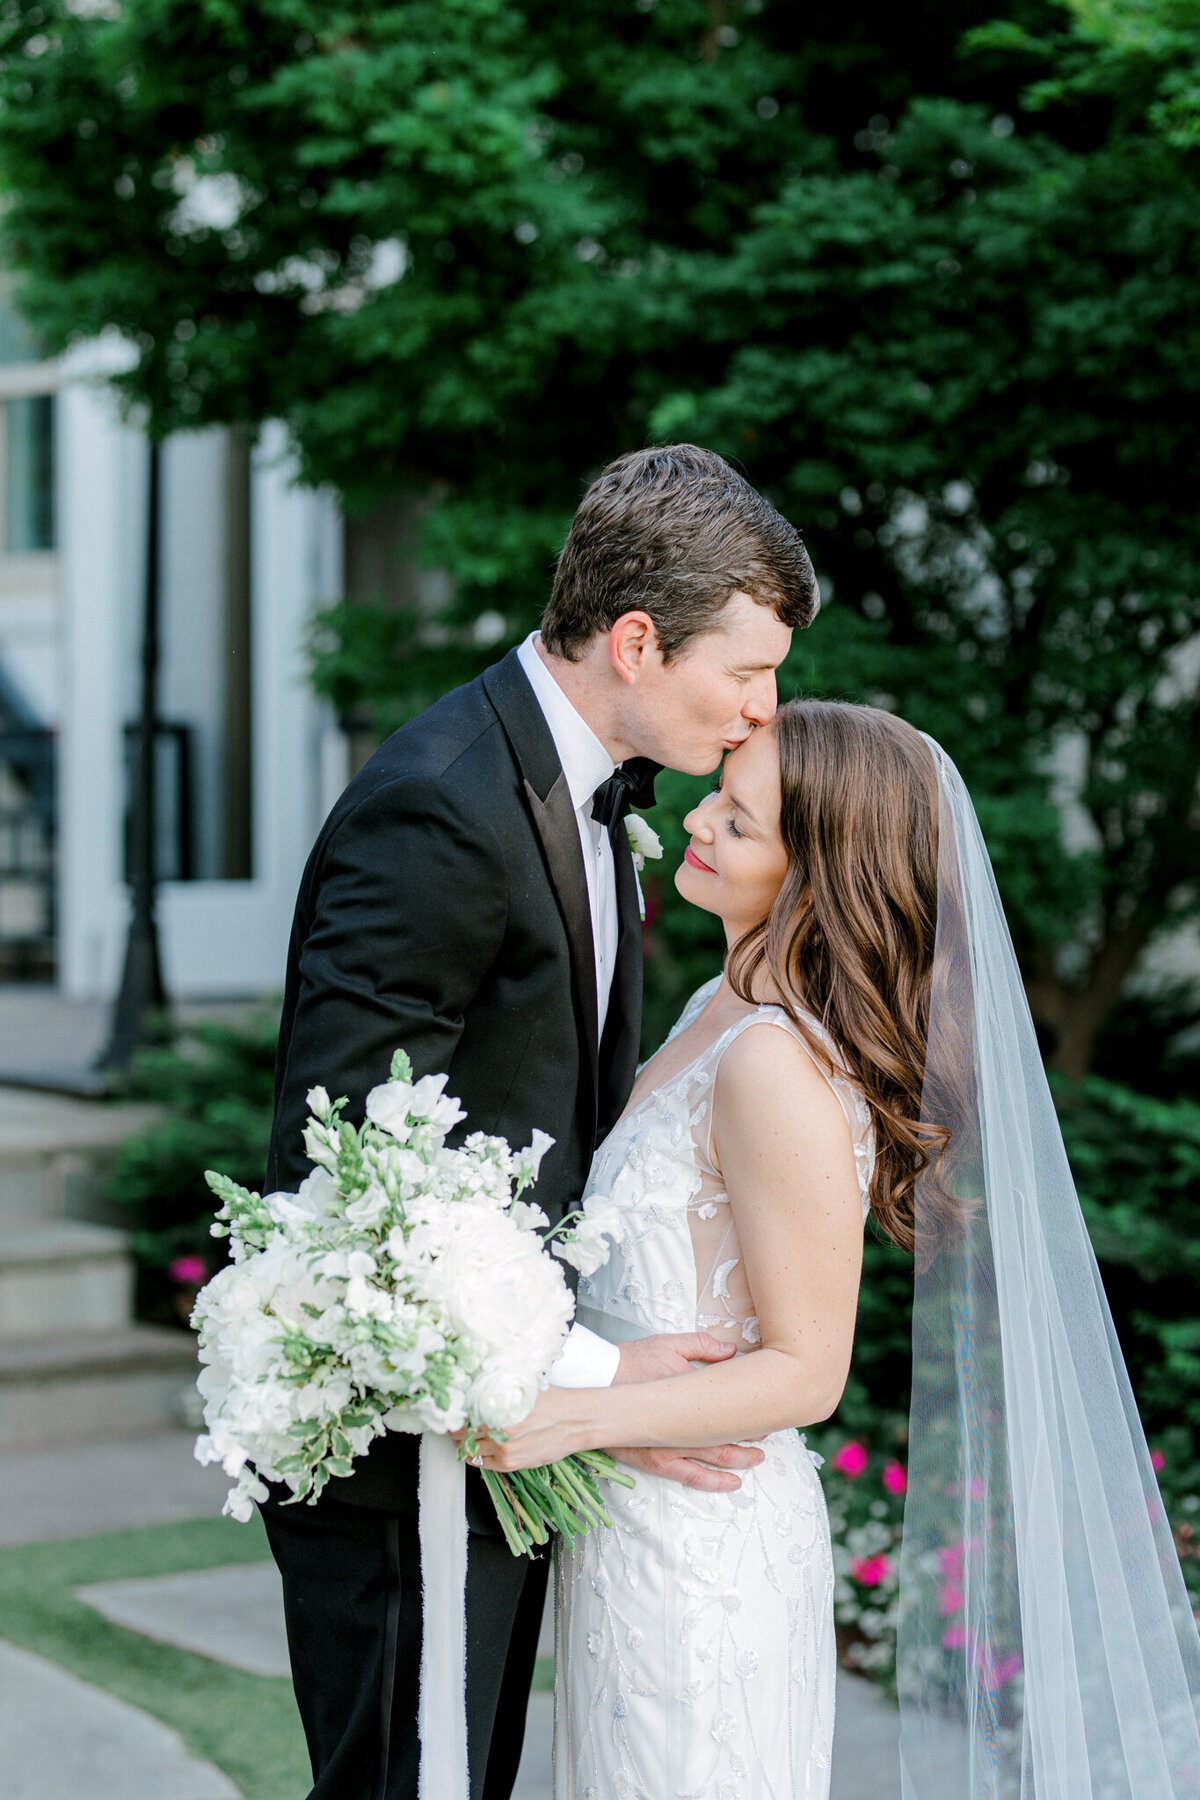 Gena & Matt's Wedding at the Dallas Arboretum | Dallas Wedding Photographer | Sami Kathryn Photography-173